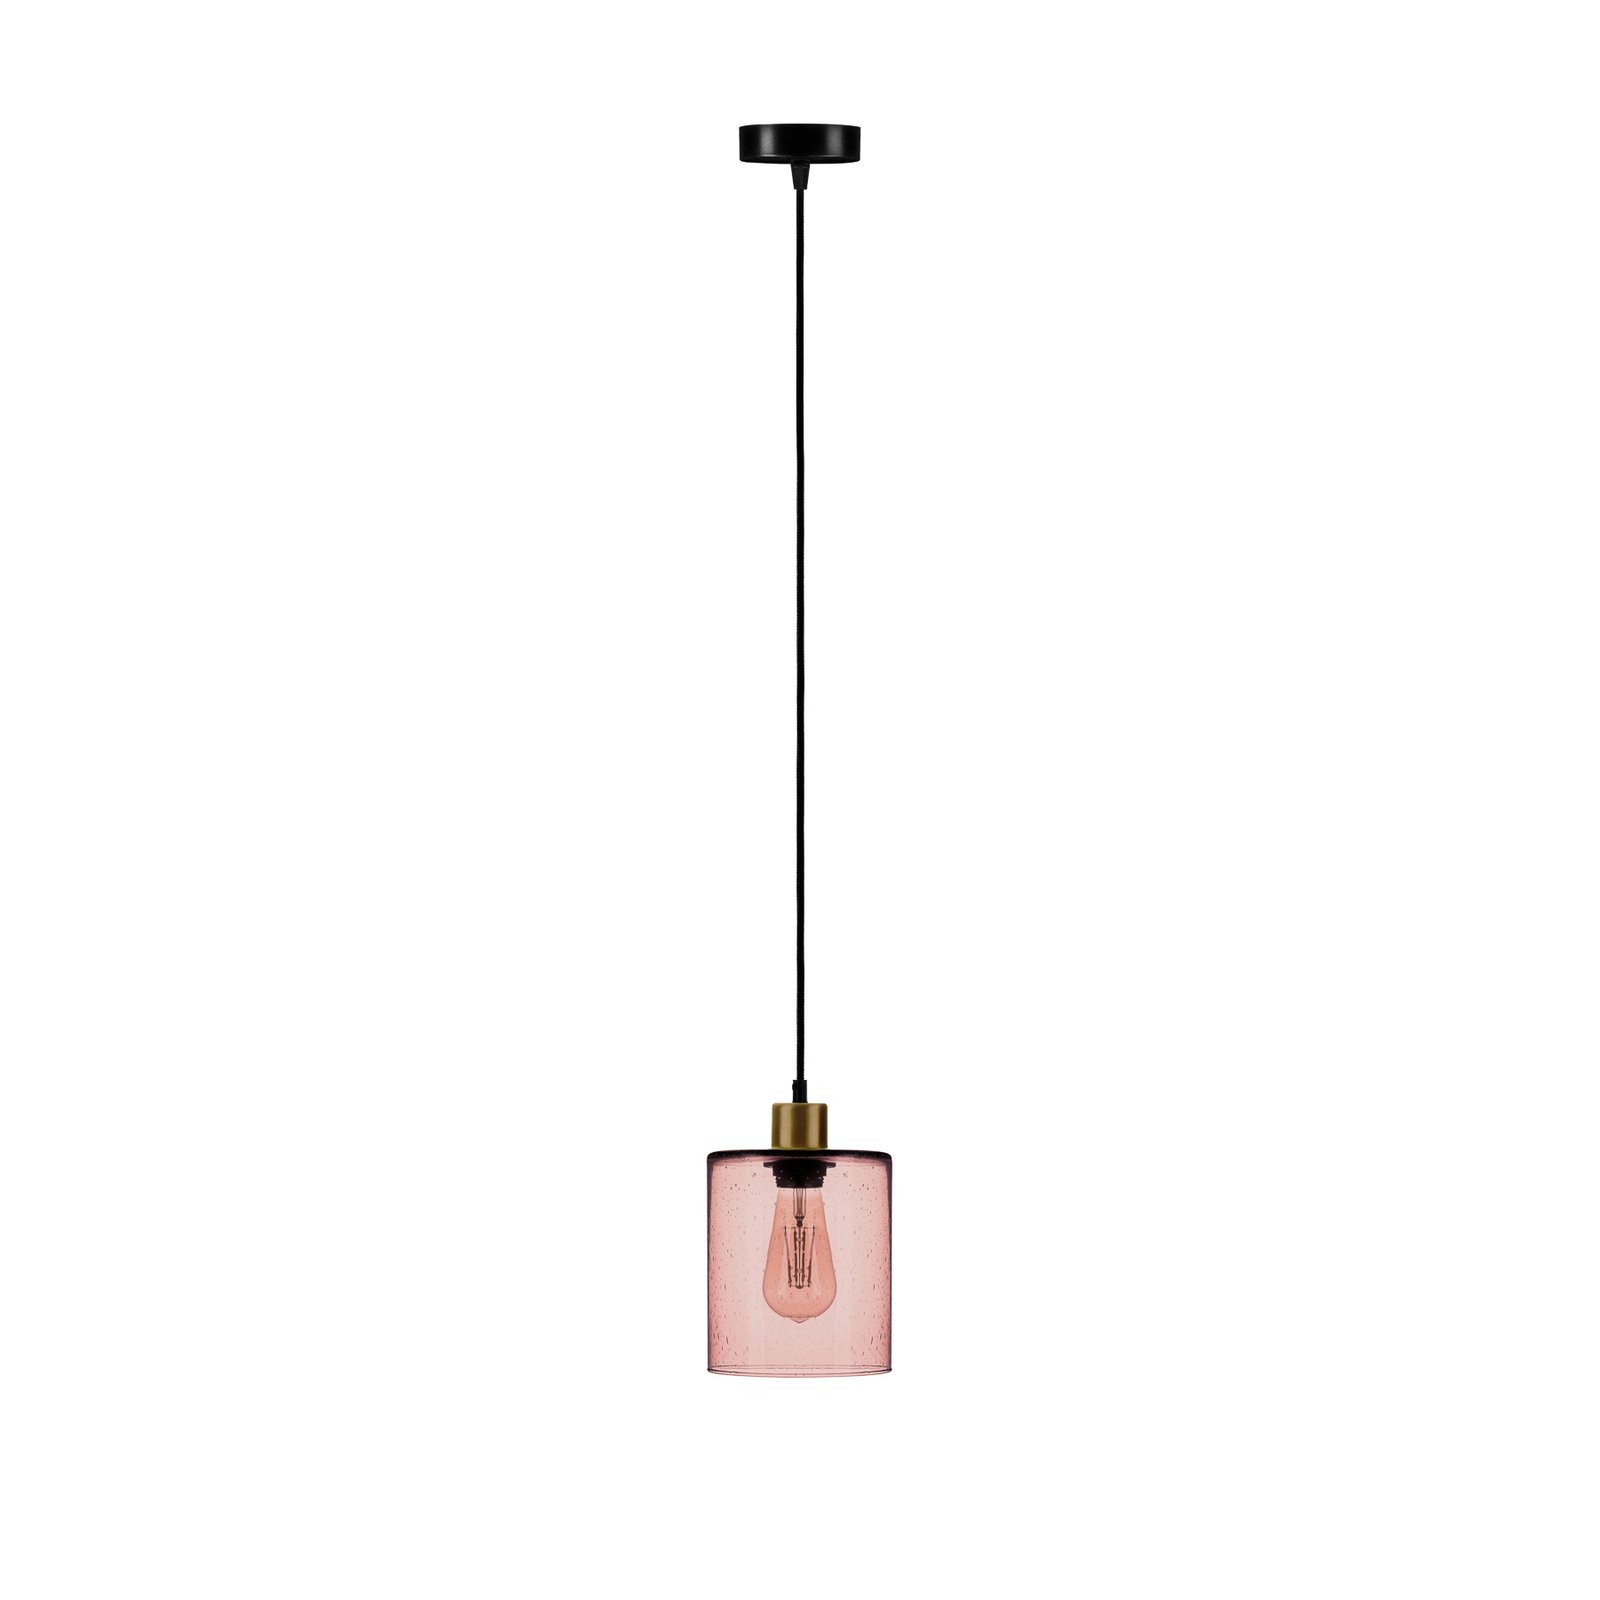 Soda hanglamp met roos glazen kap Ø 15cm